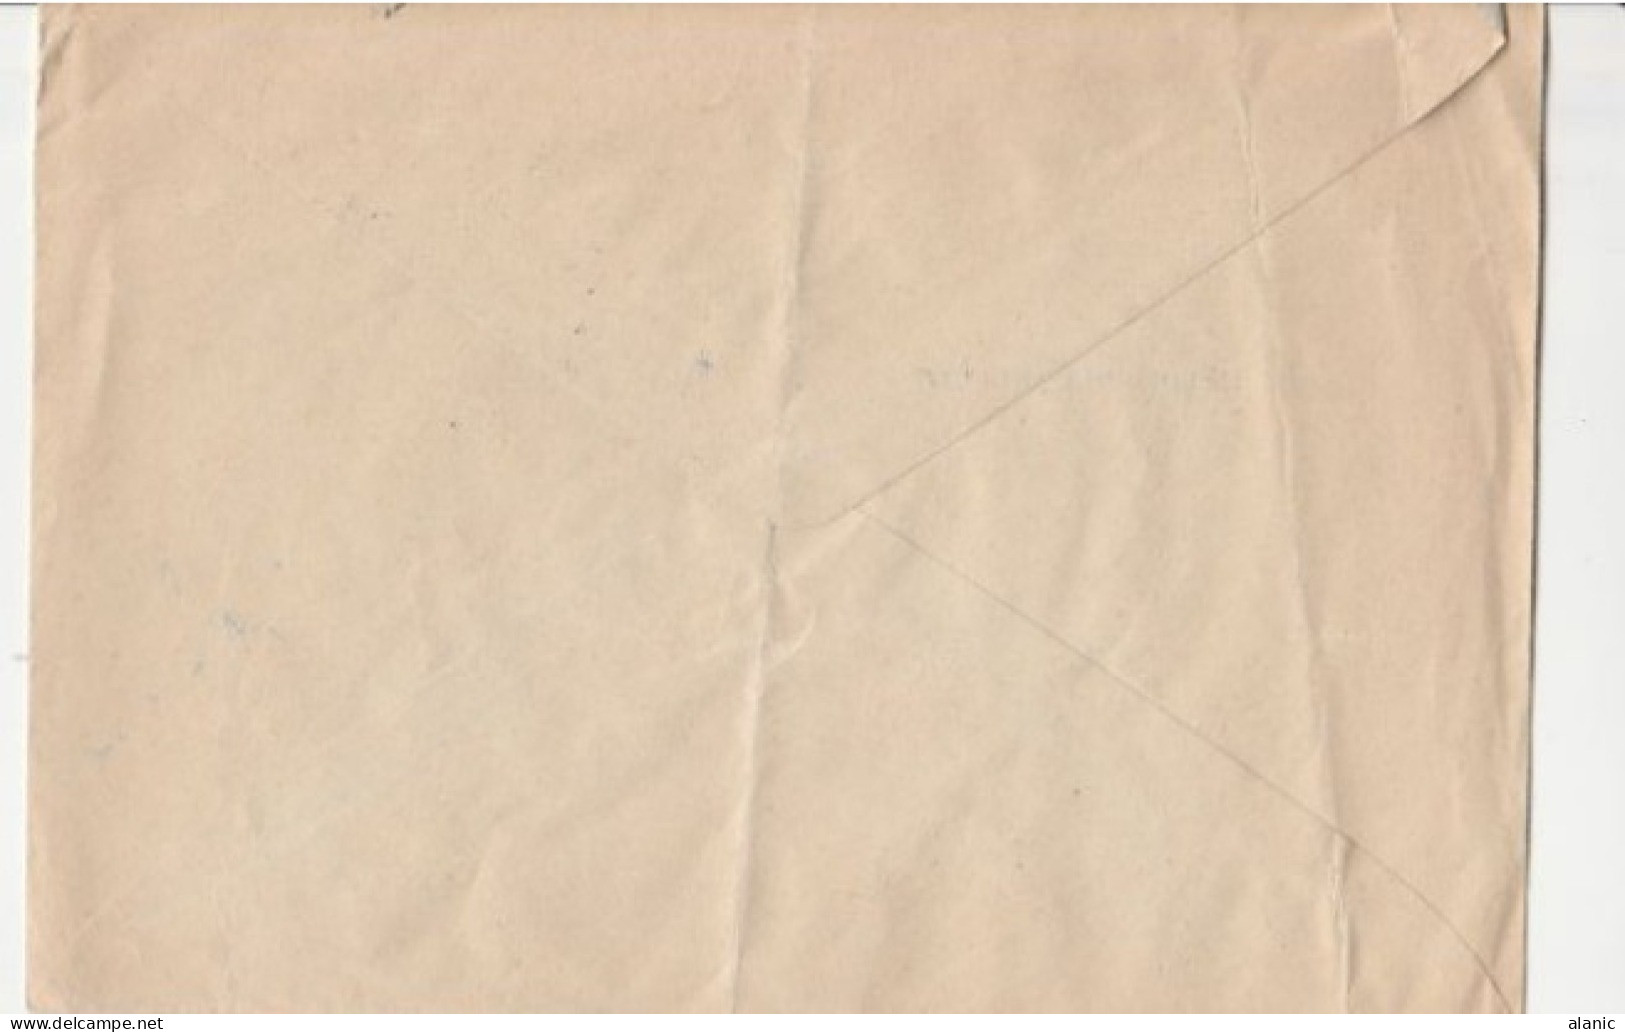 SARRE-Sur Enveloppe Commerciale 1954-N°258+310 De SAARBRUCKEN - Briefe U. Dokumente